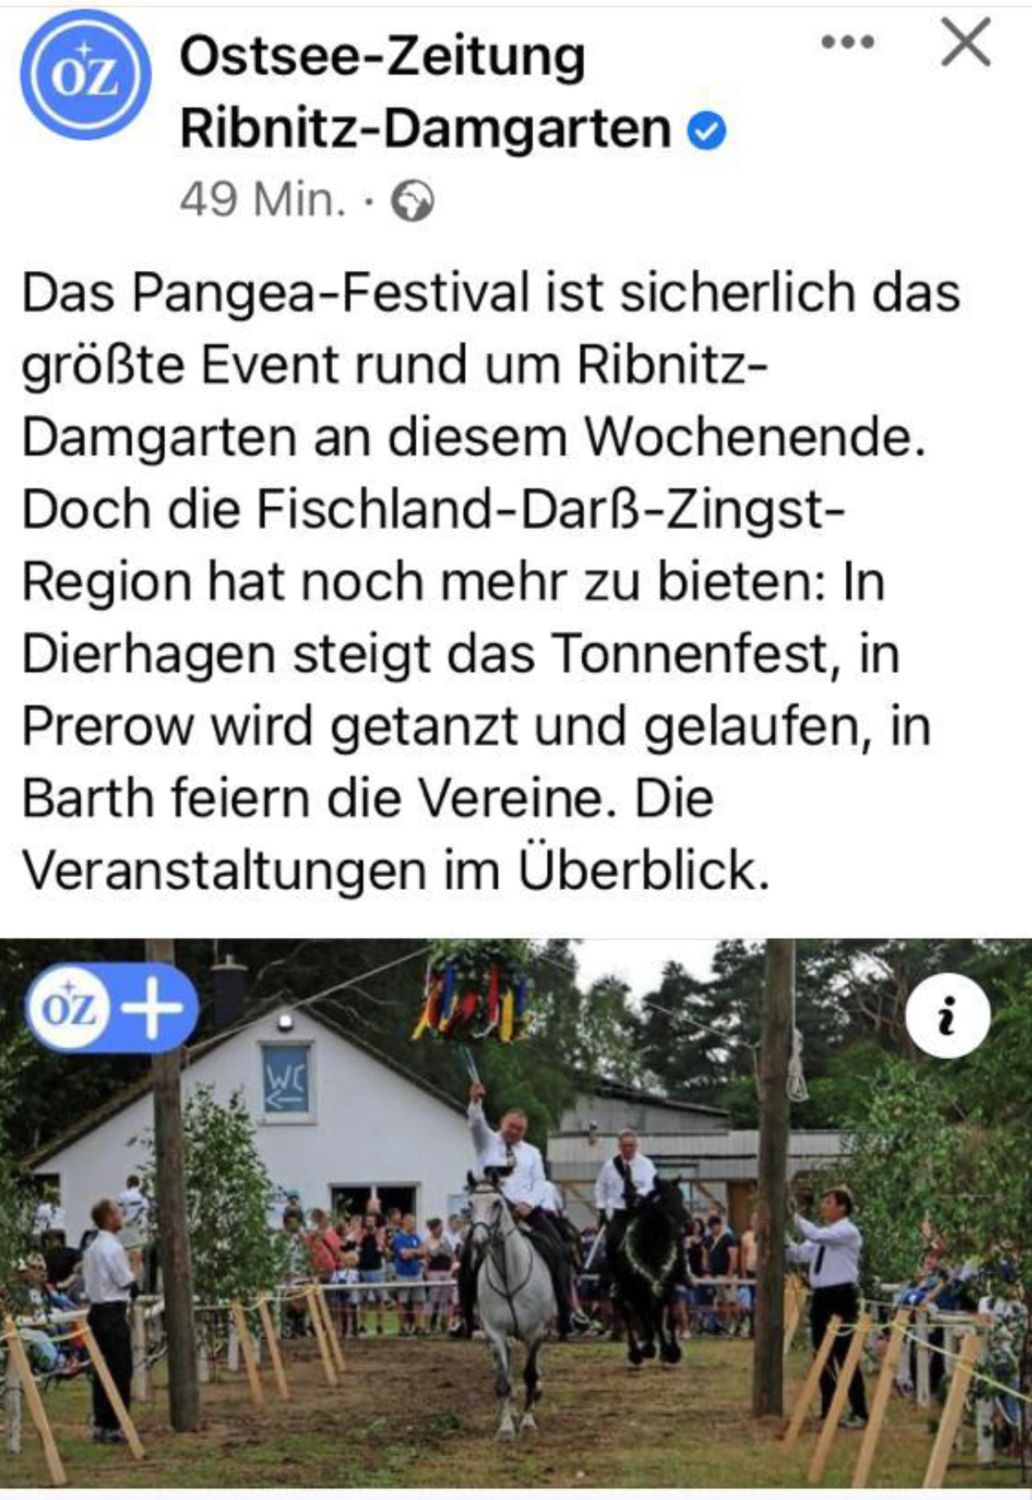 Ostsee-Zeitung/ Facebook: 